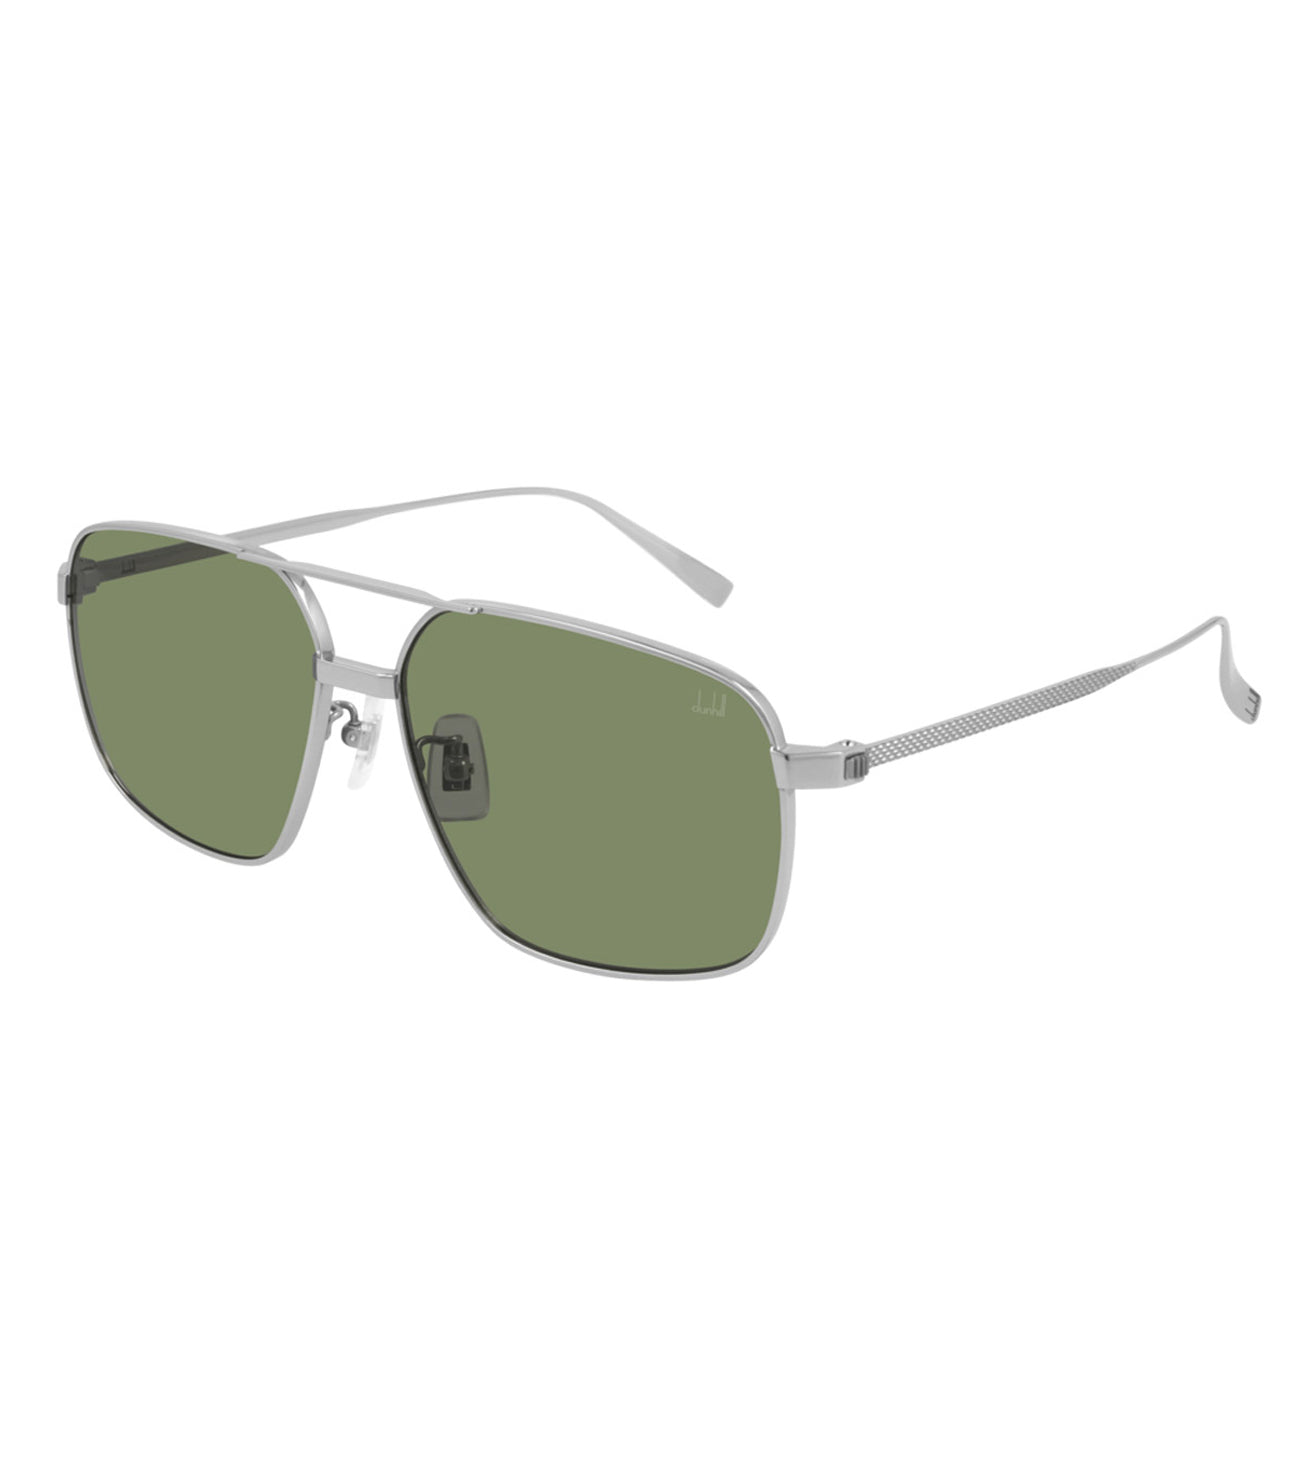 Dunhill Men's Green Square Sunglasses